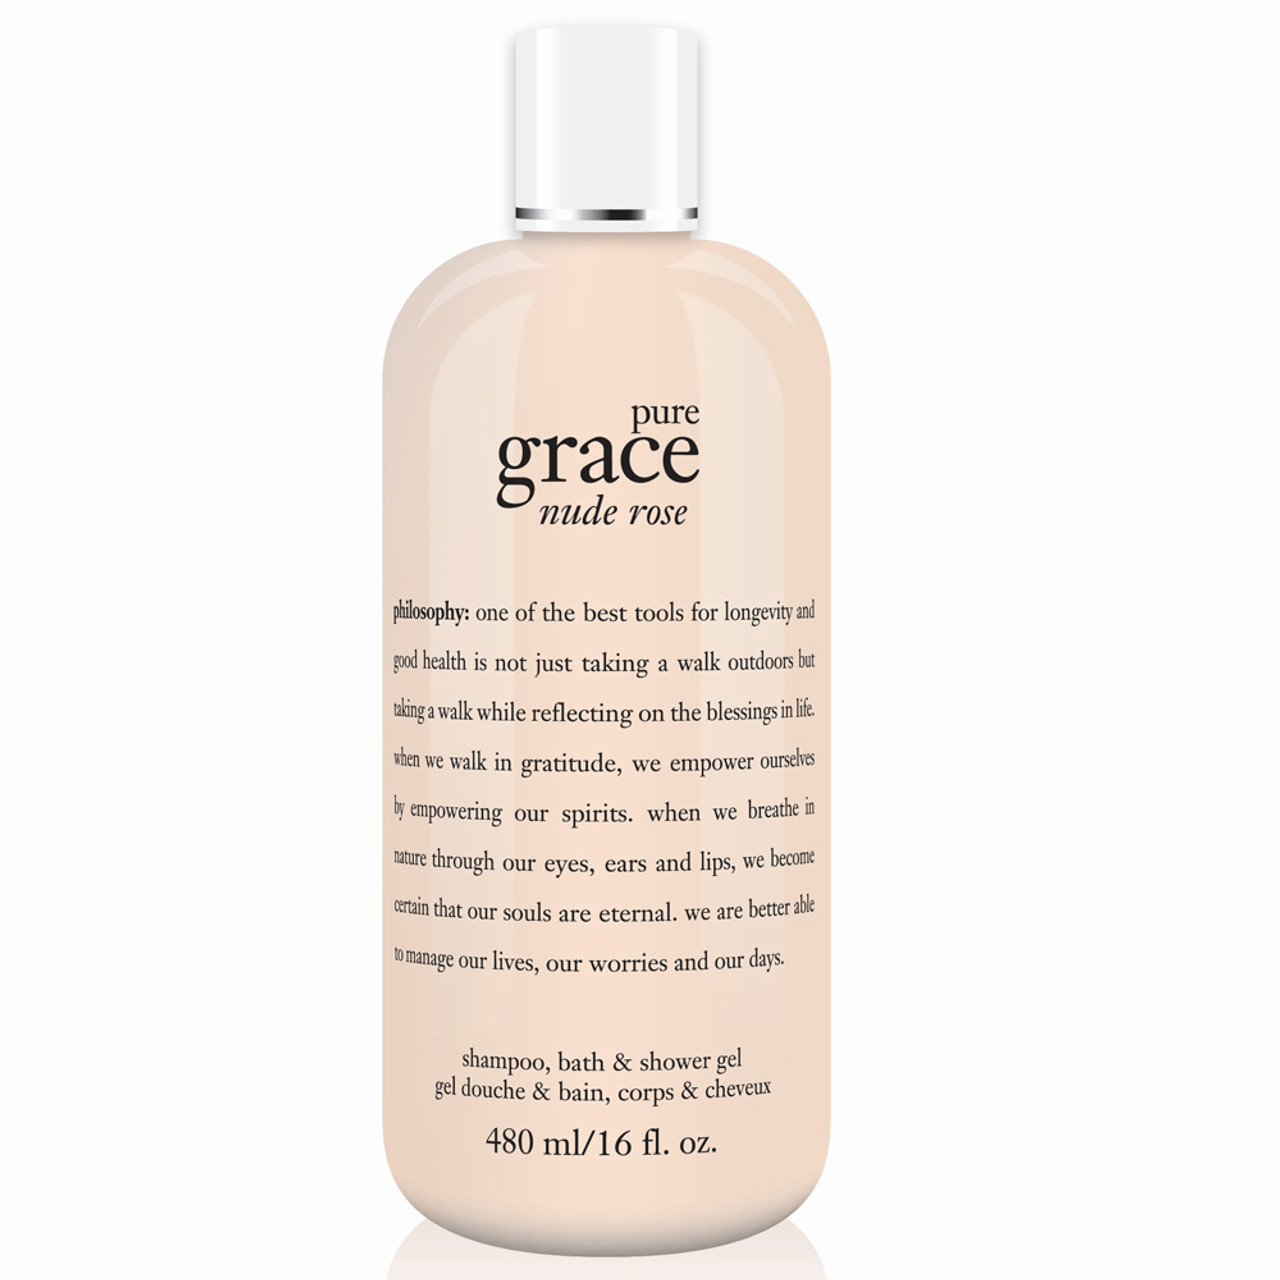 philosophy Pure Grace Nude Rose Shower Gel BeautifiedYou.com